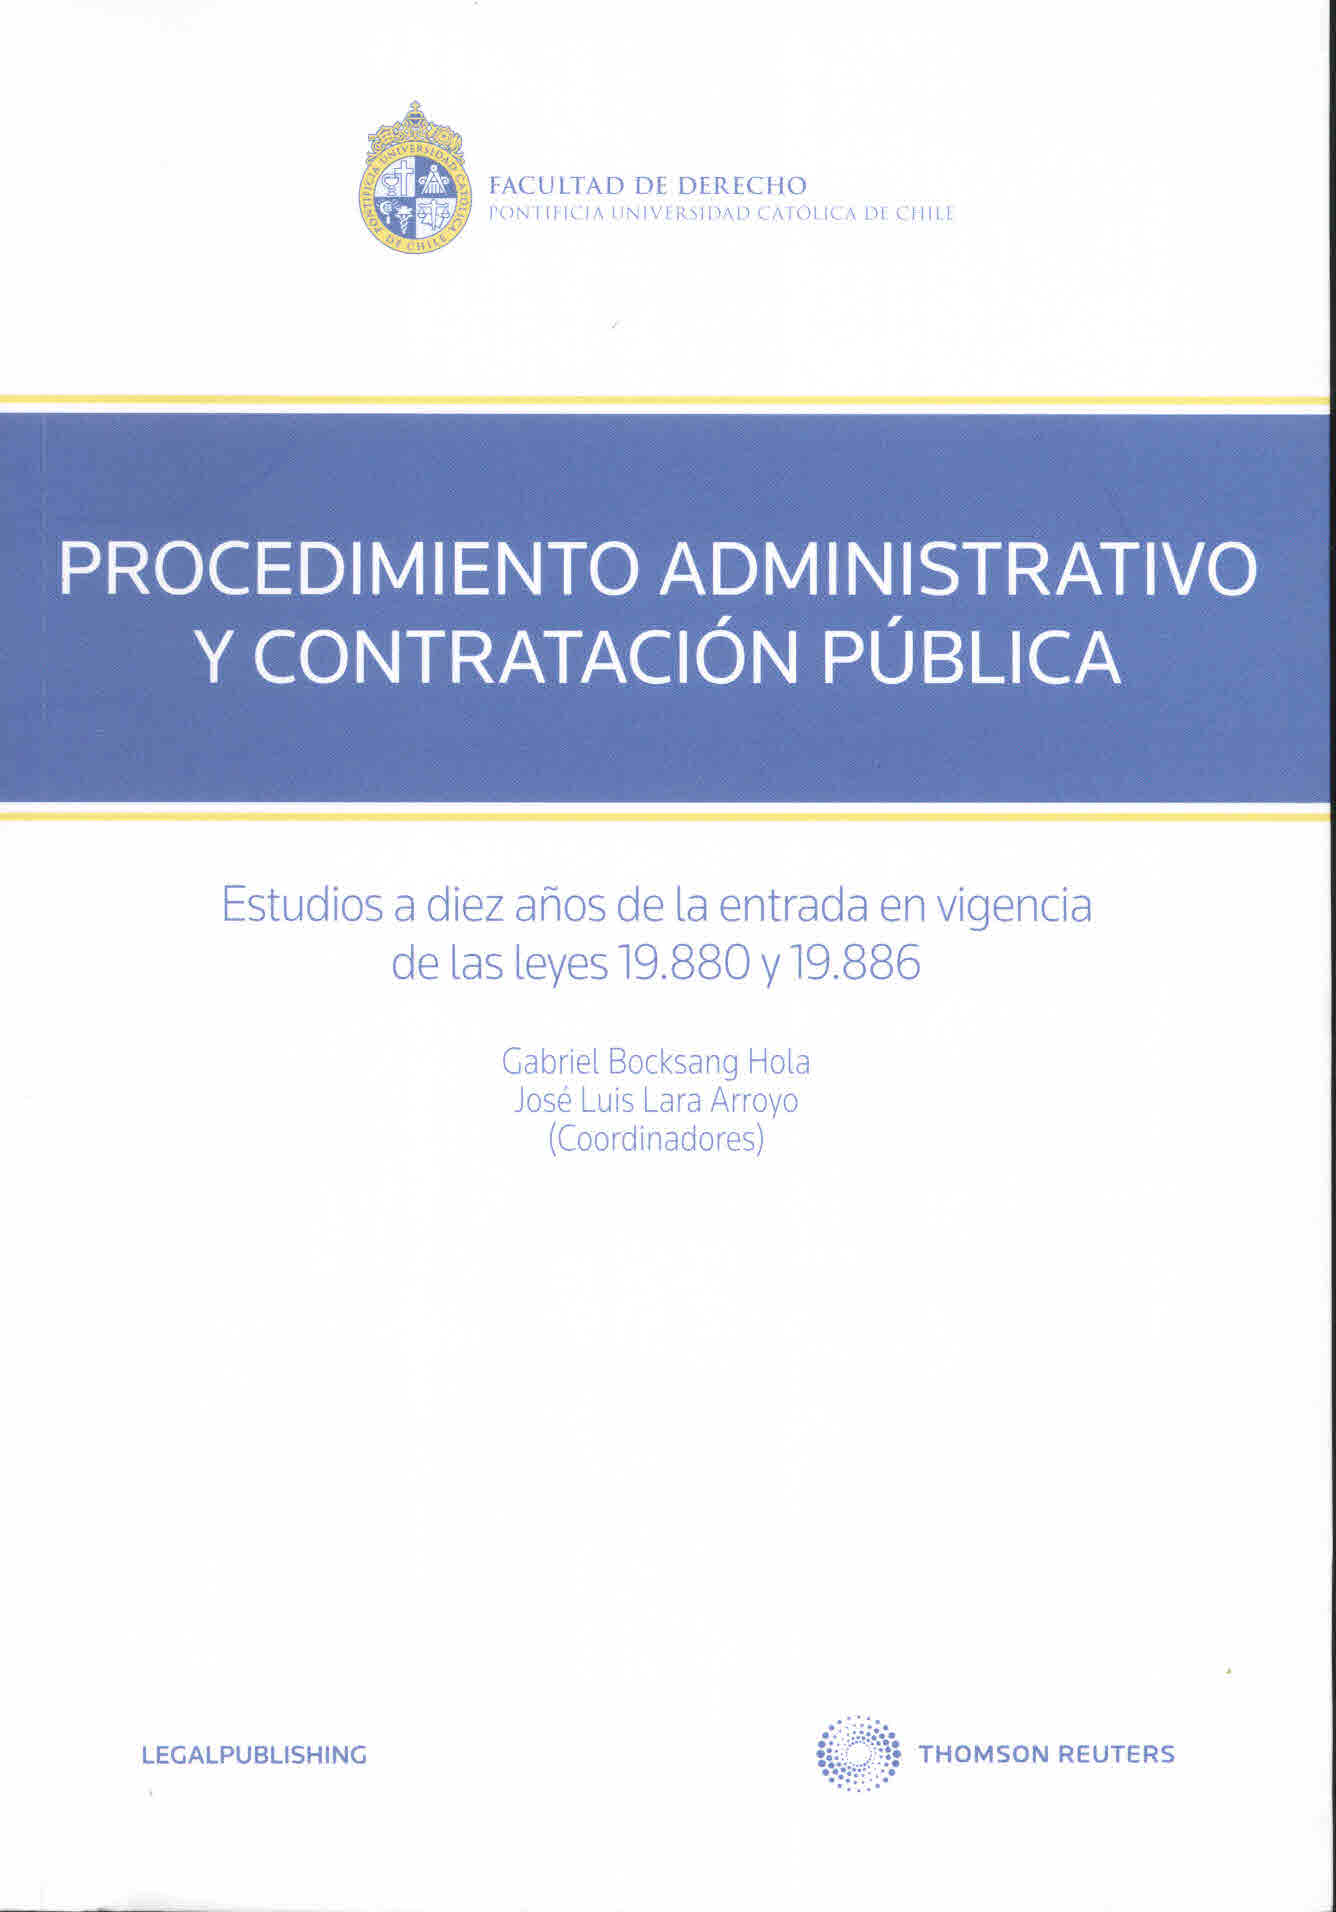 Procedimiento administrativo y contratación pública. Estudios a diez años de la entrada en vigencia de las leyes N° 19.880 y N°19.886